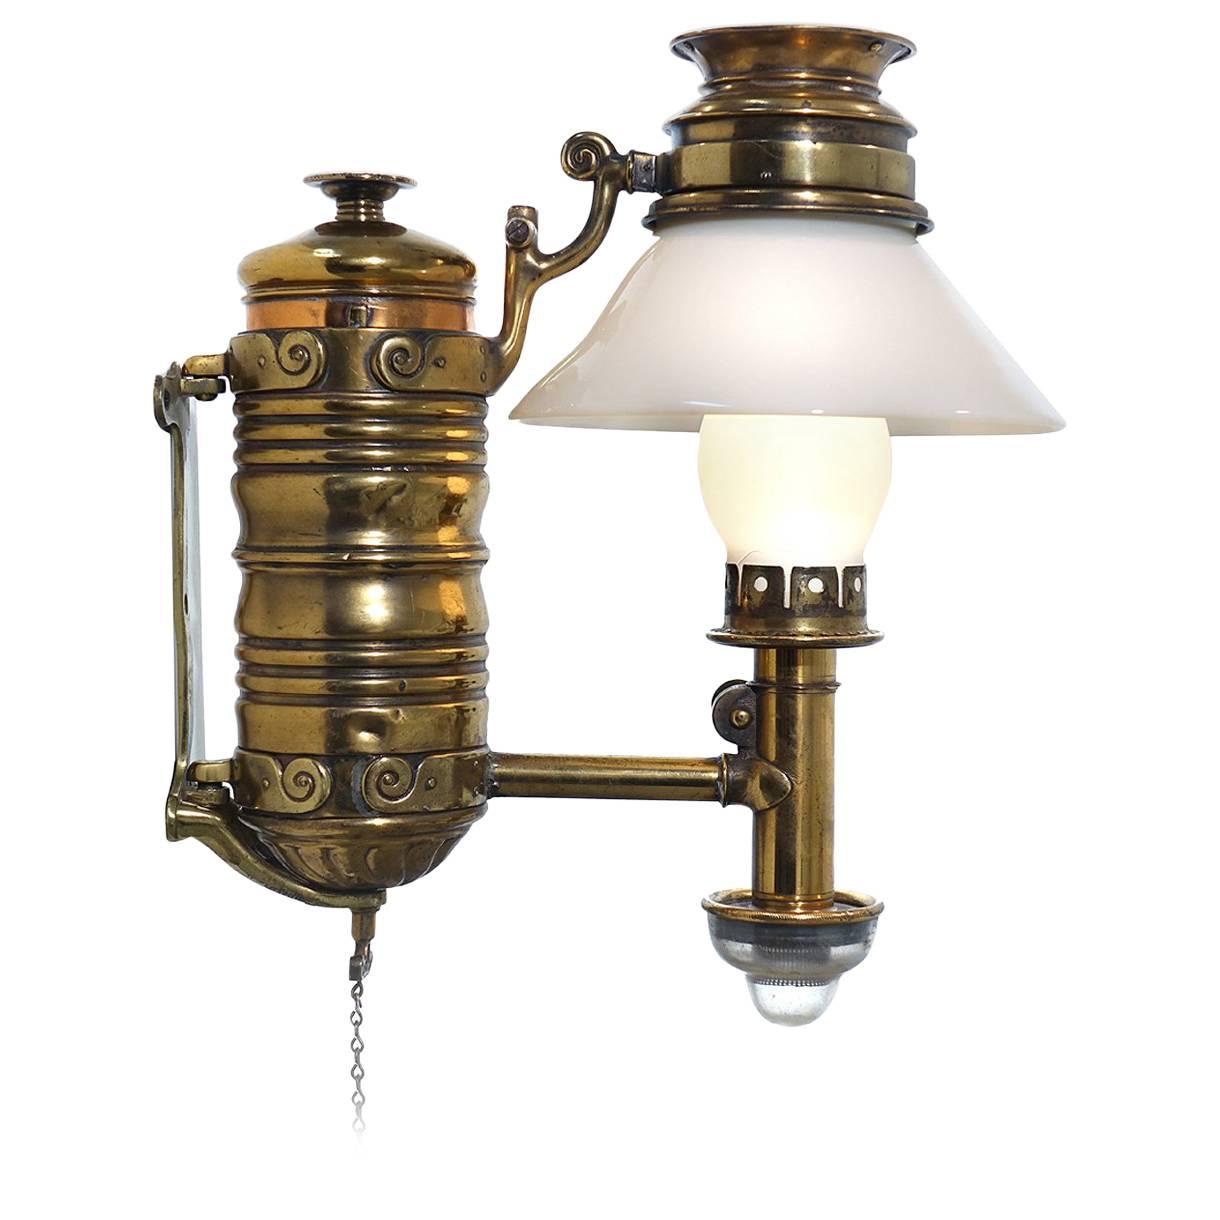 Very Rare 1800s Adams & Westlake Railroad Dining Car Oil Lamp